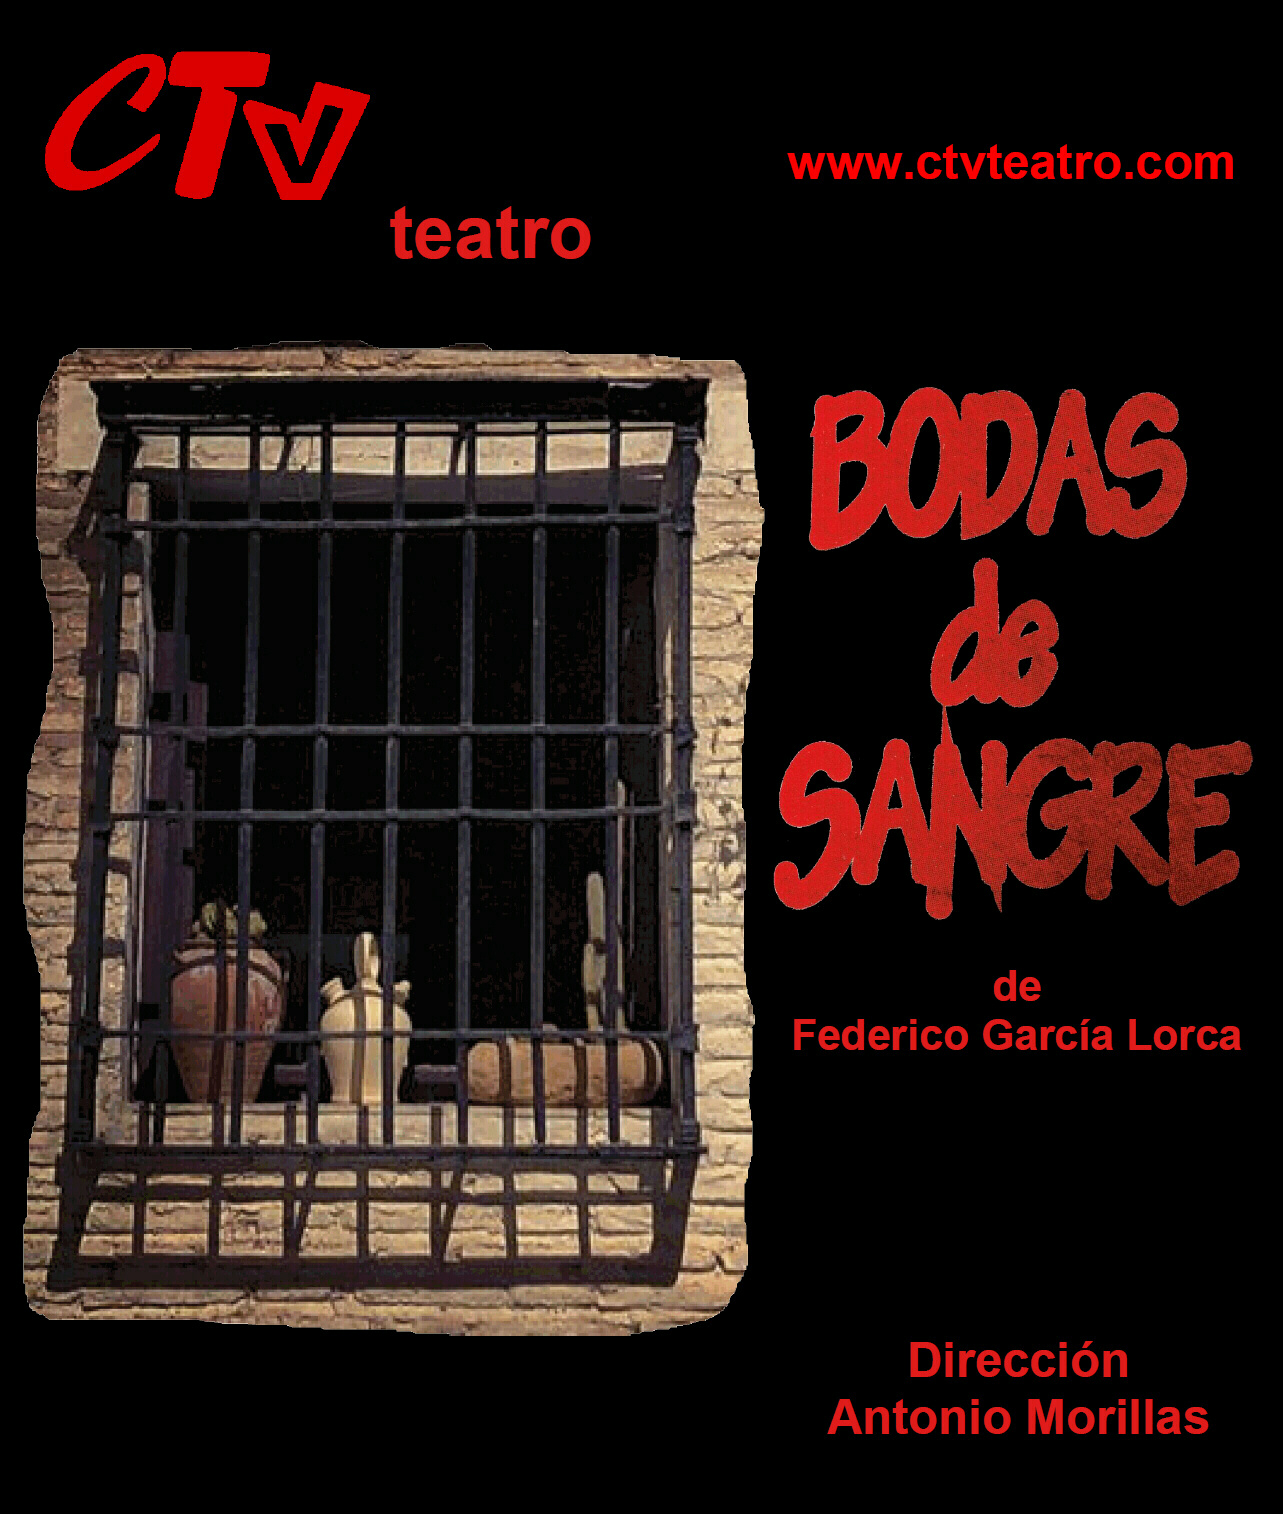 Ctv Teatro Boda De Sangre